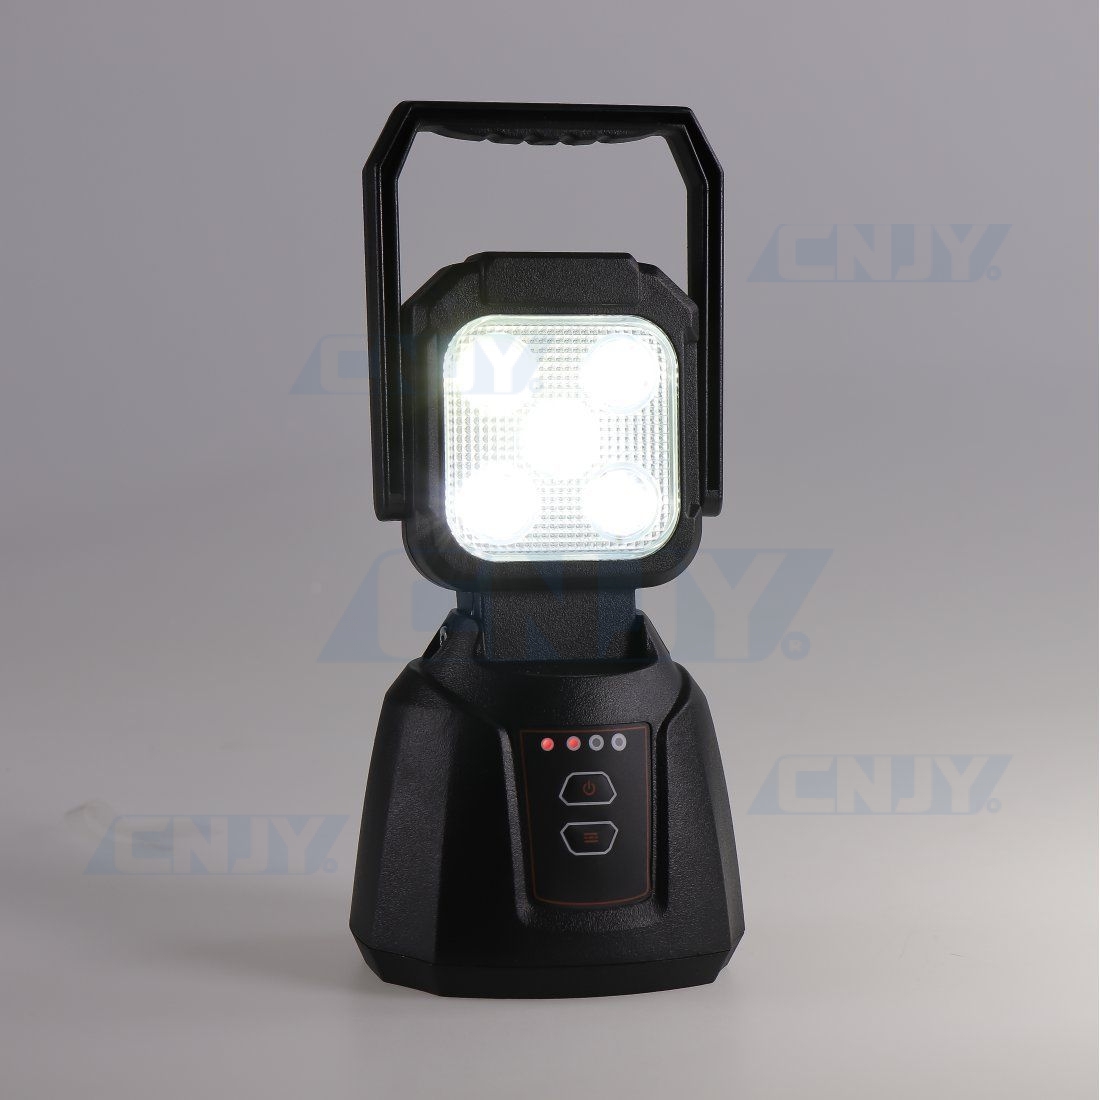 Lampe torche sans fil autonome et magnétique à led Armilight01 rechargeable.